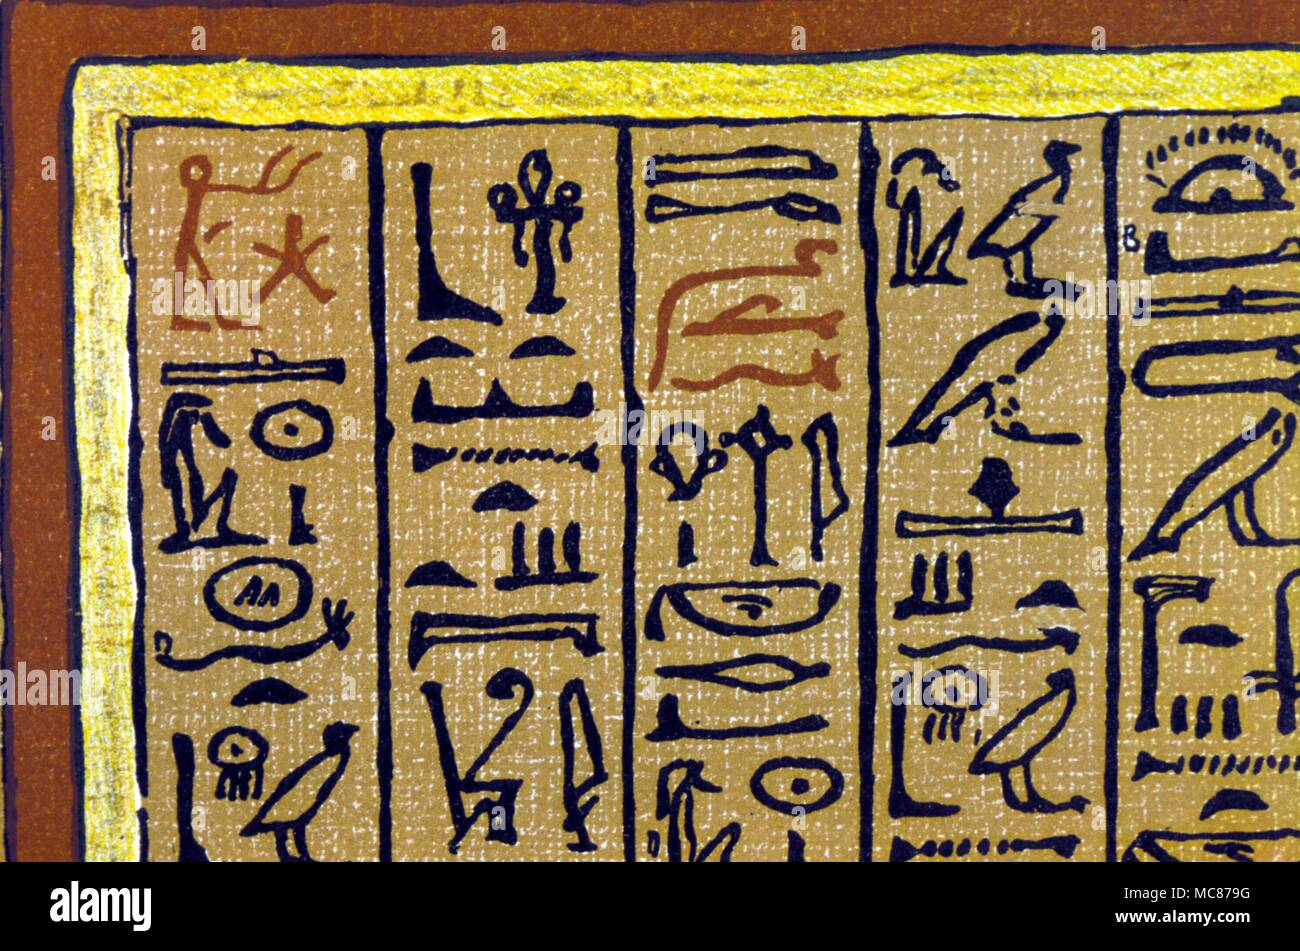 Mito: los jeroglíficos egipcios del papiro Hunefer apertura del "Libro de los Muertos egipcio' (Budge edición litográfica). Los primeros jeroglíficos representan el "hombre orante" y la estrella de la SBA, en la invocación a los dioses. Foto de stock